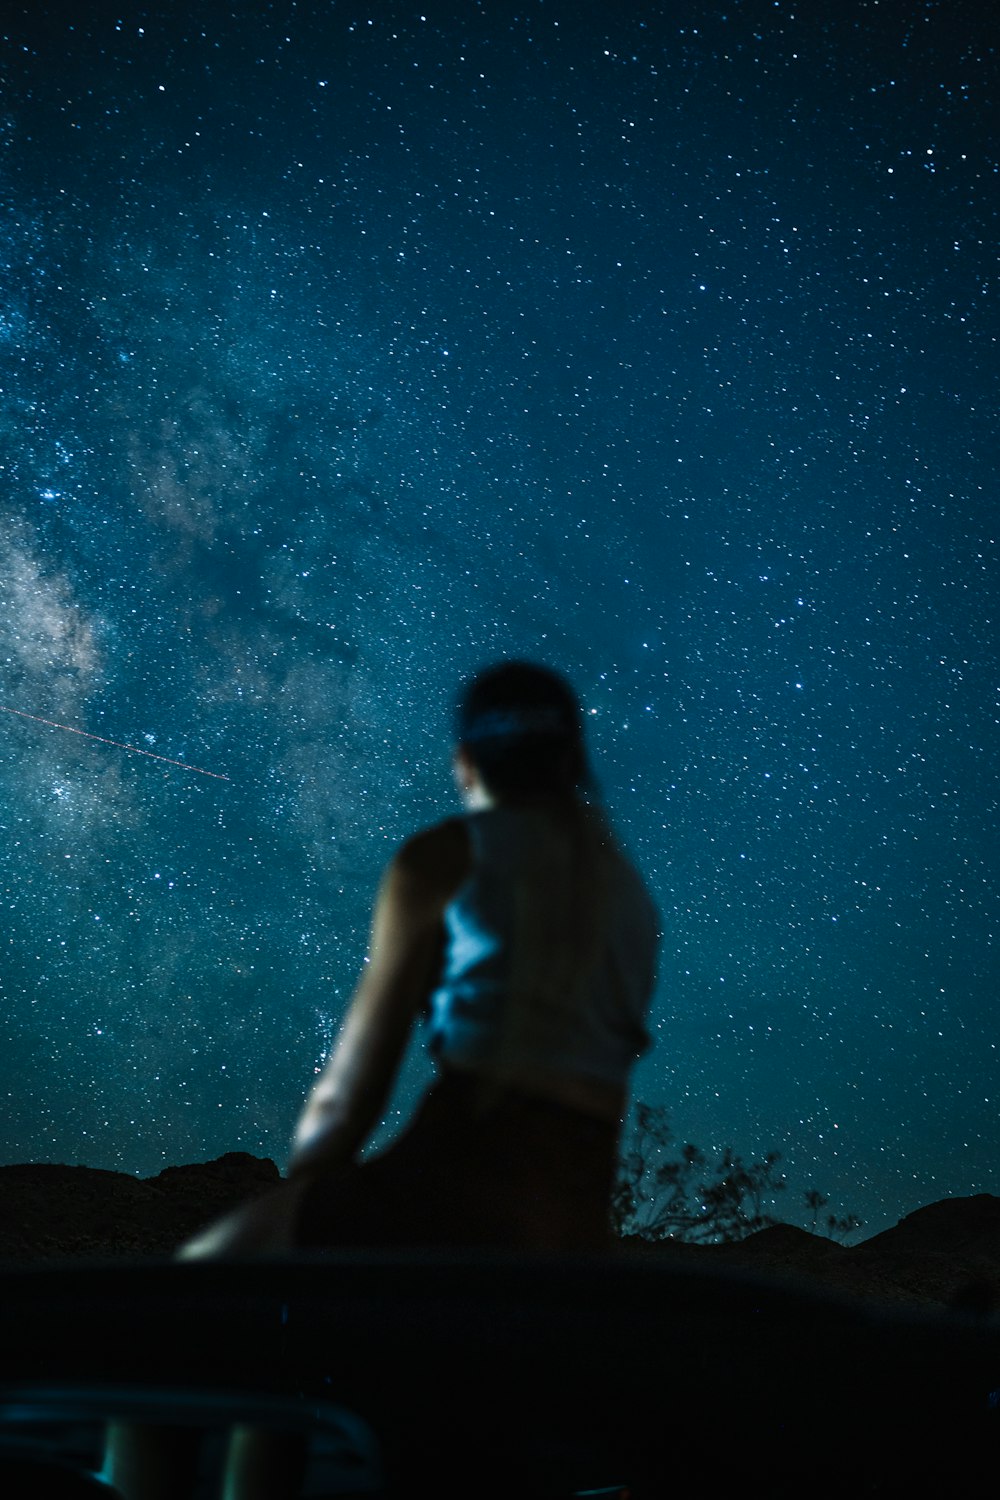 Una persona parada frente a un cielo estrellado